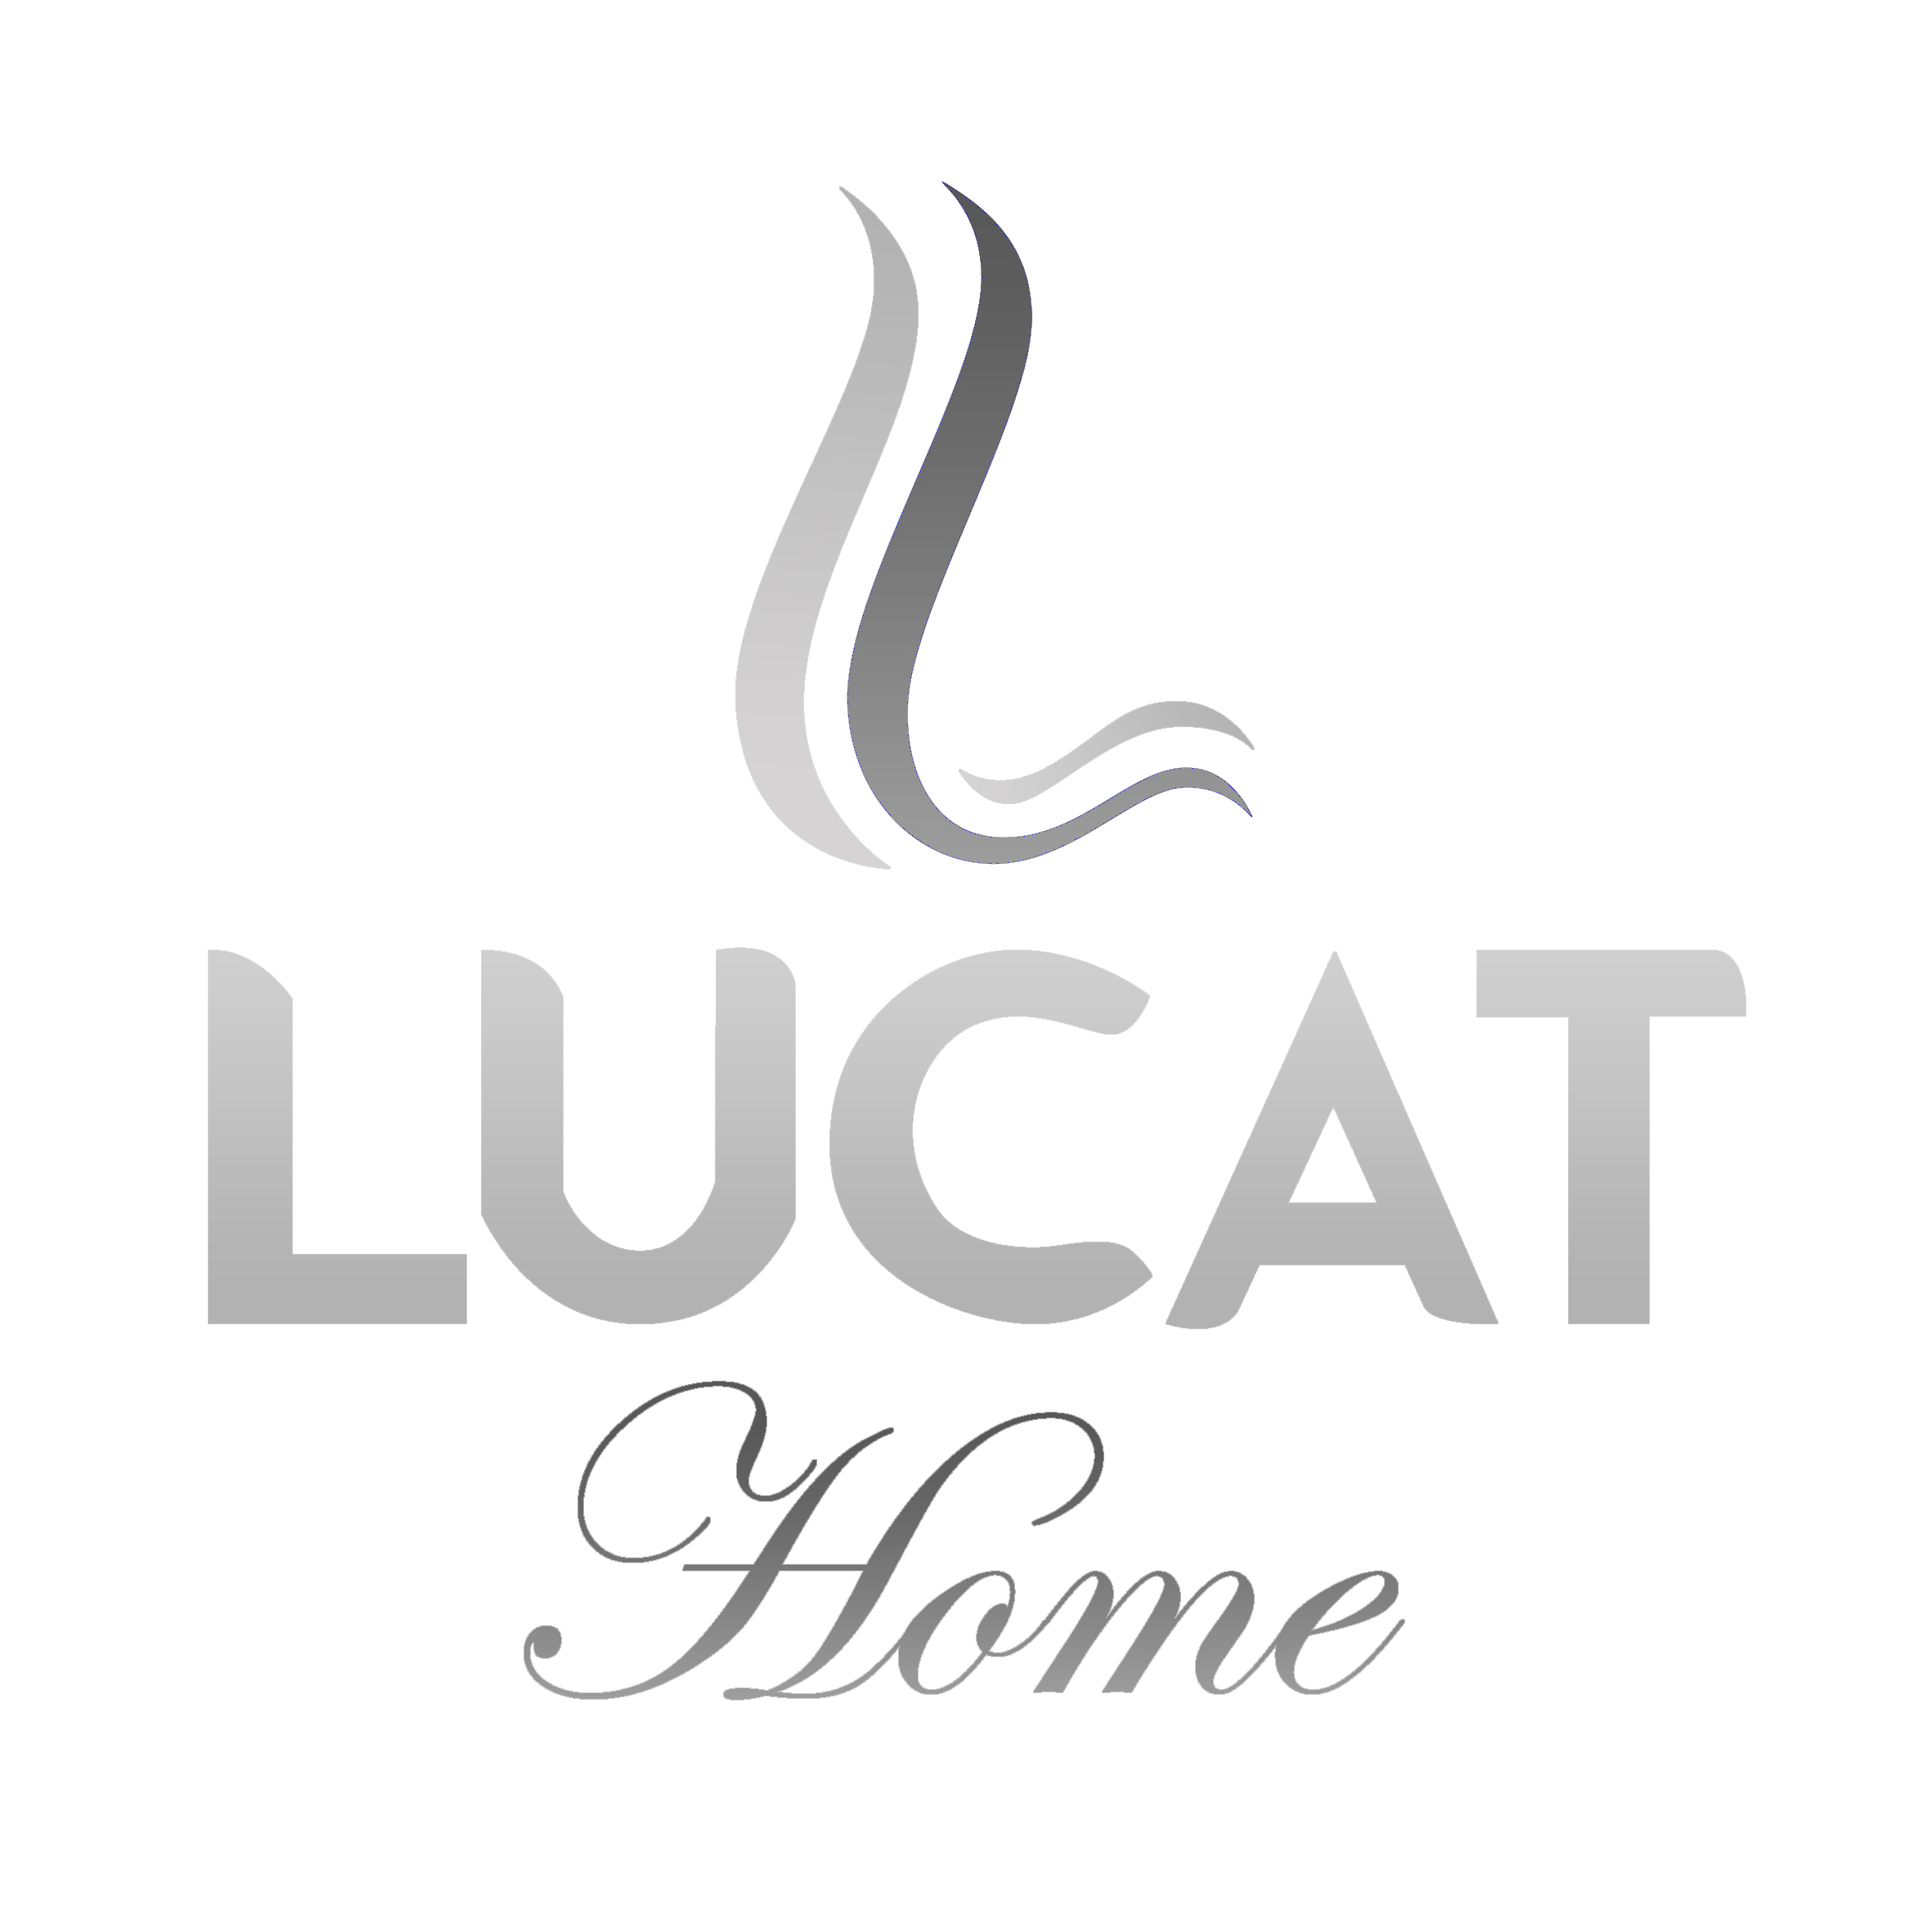 Lucat home 